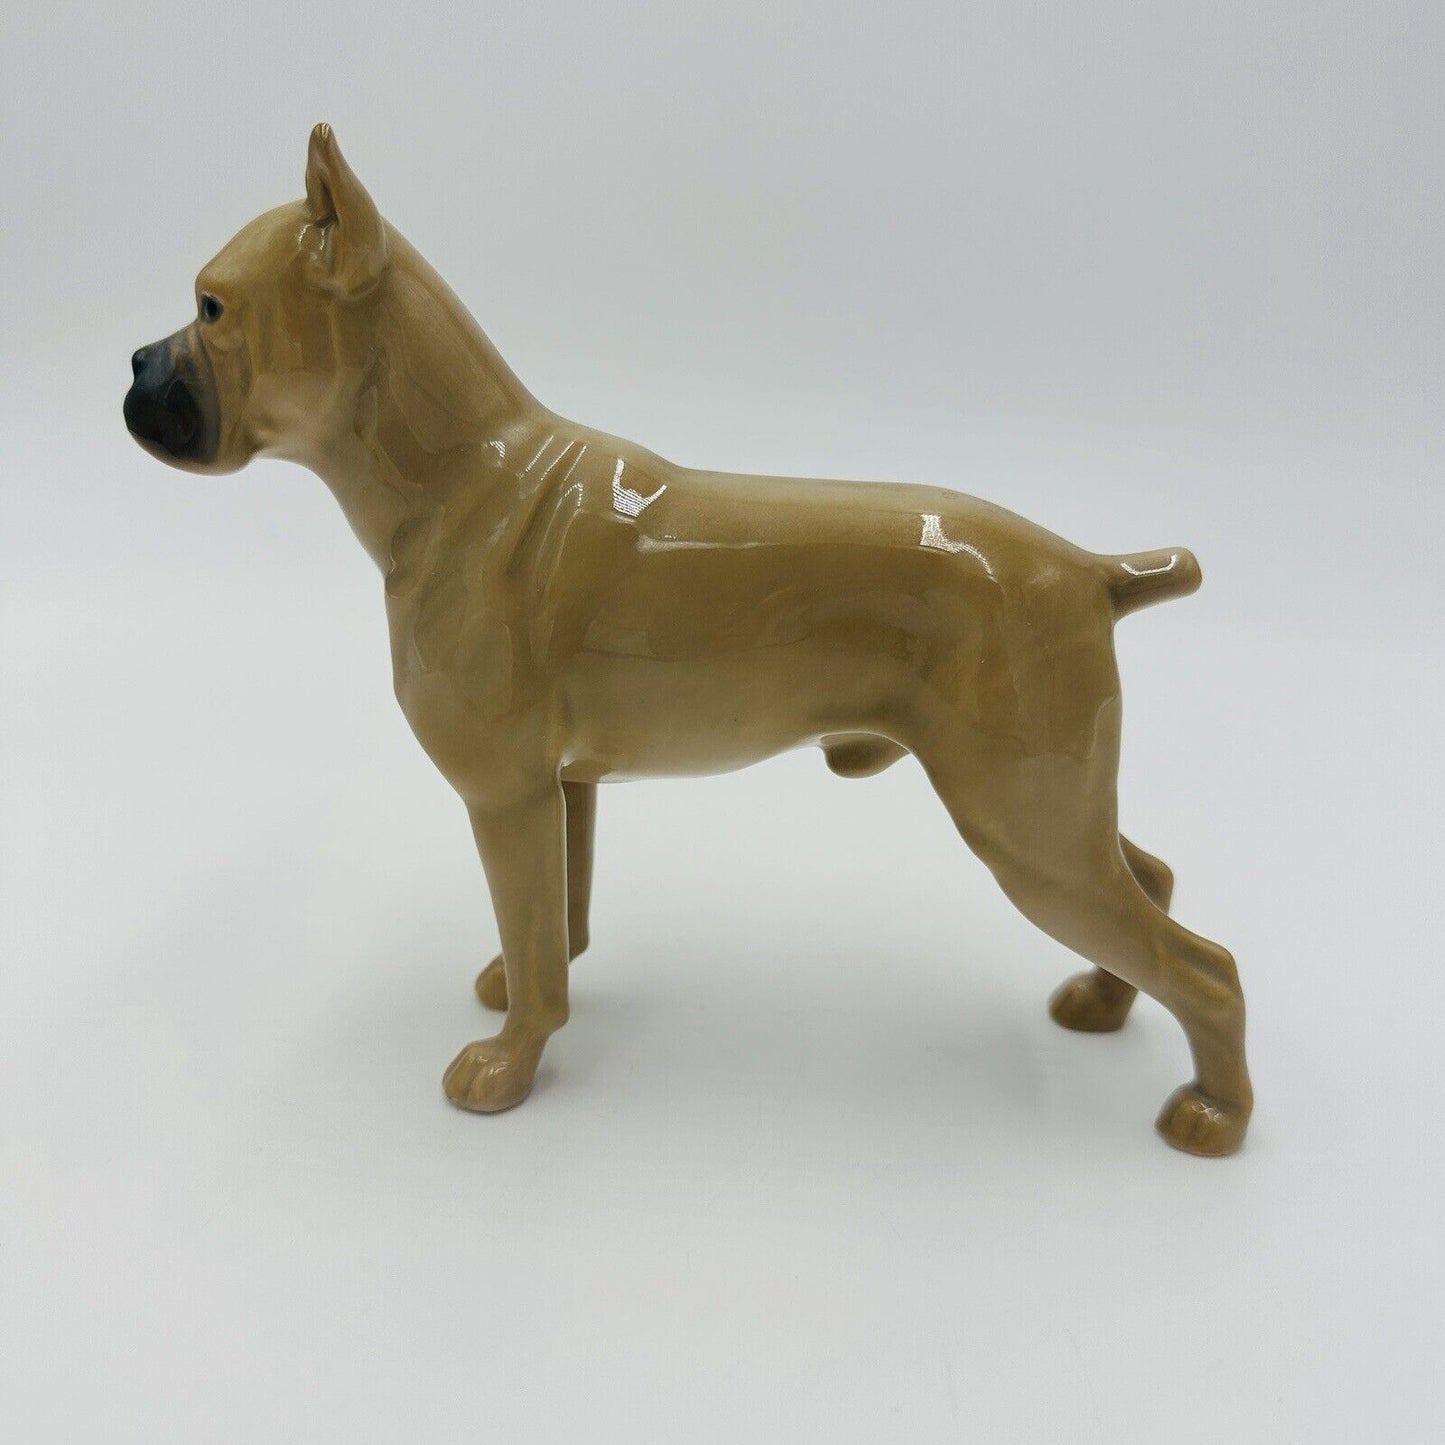 vintage Bing & Grondahl dog Boxer standing figurine porcelain No 2212 Denmark